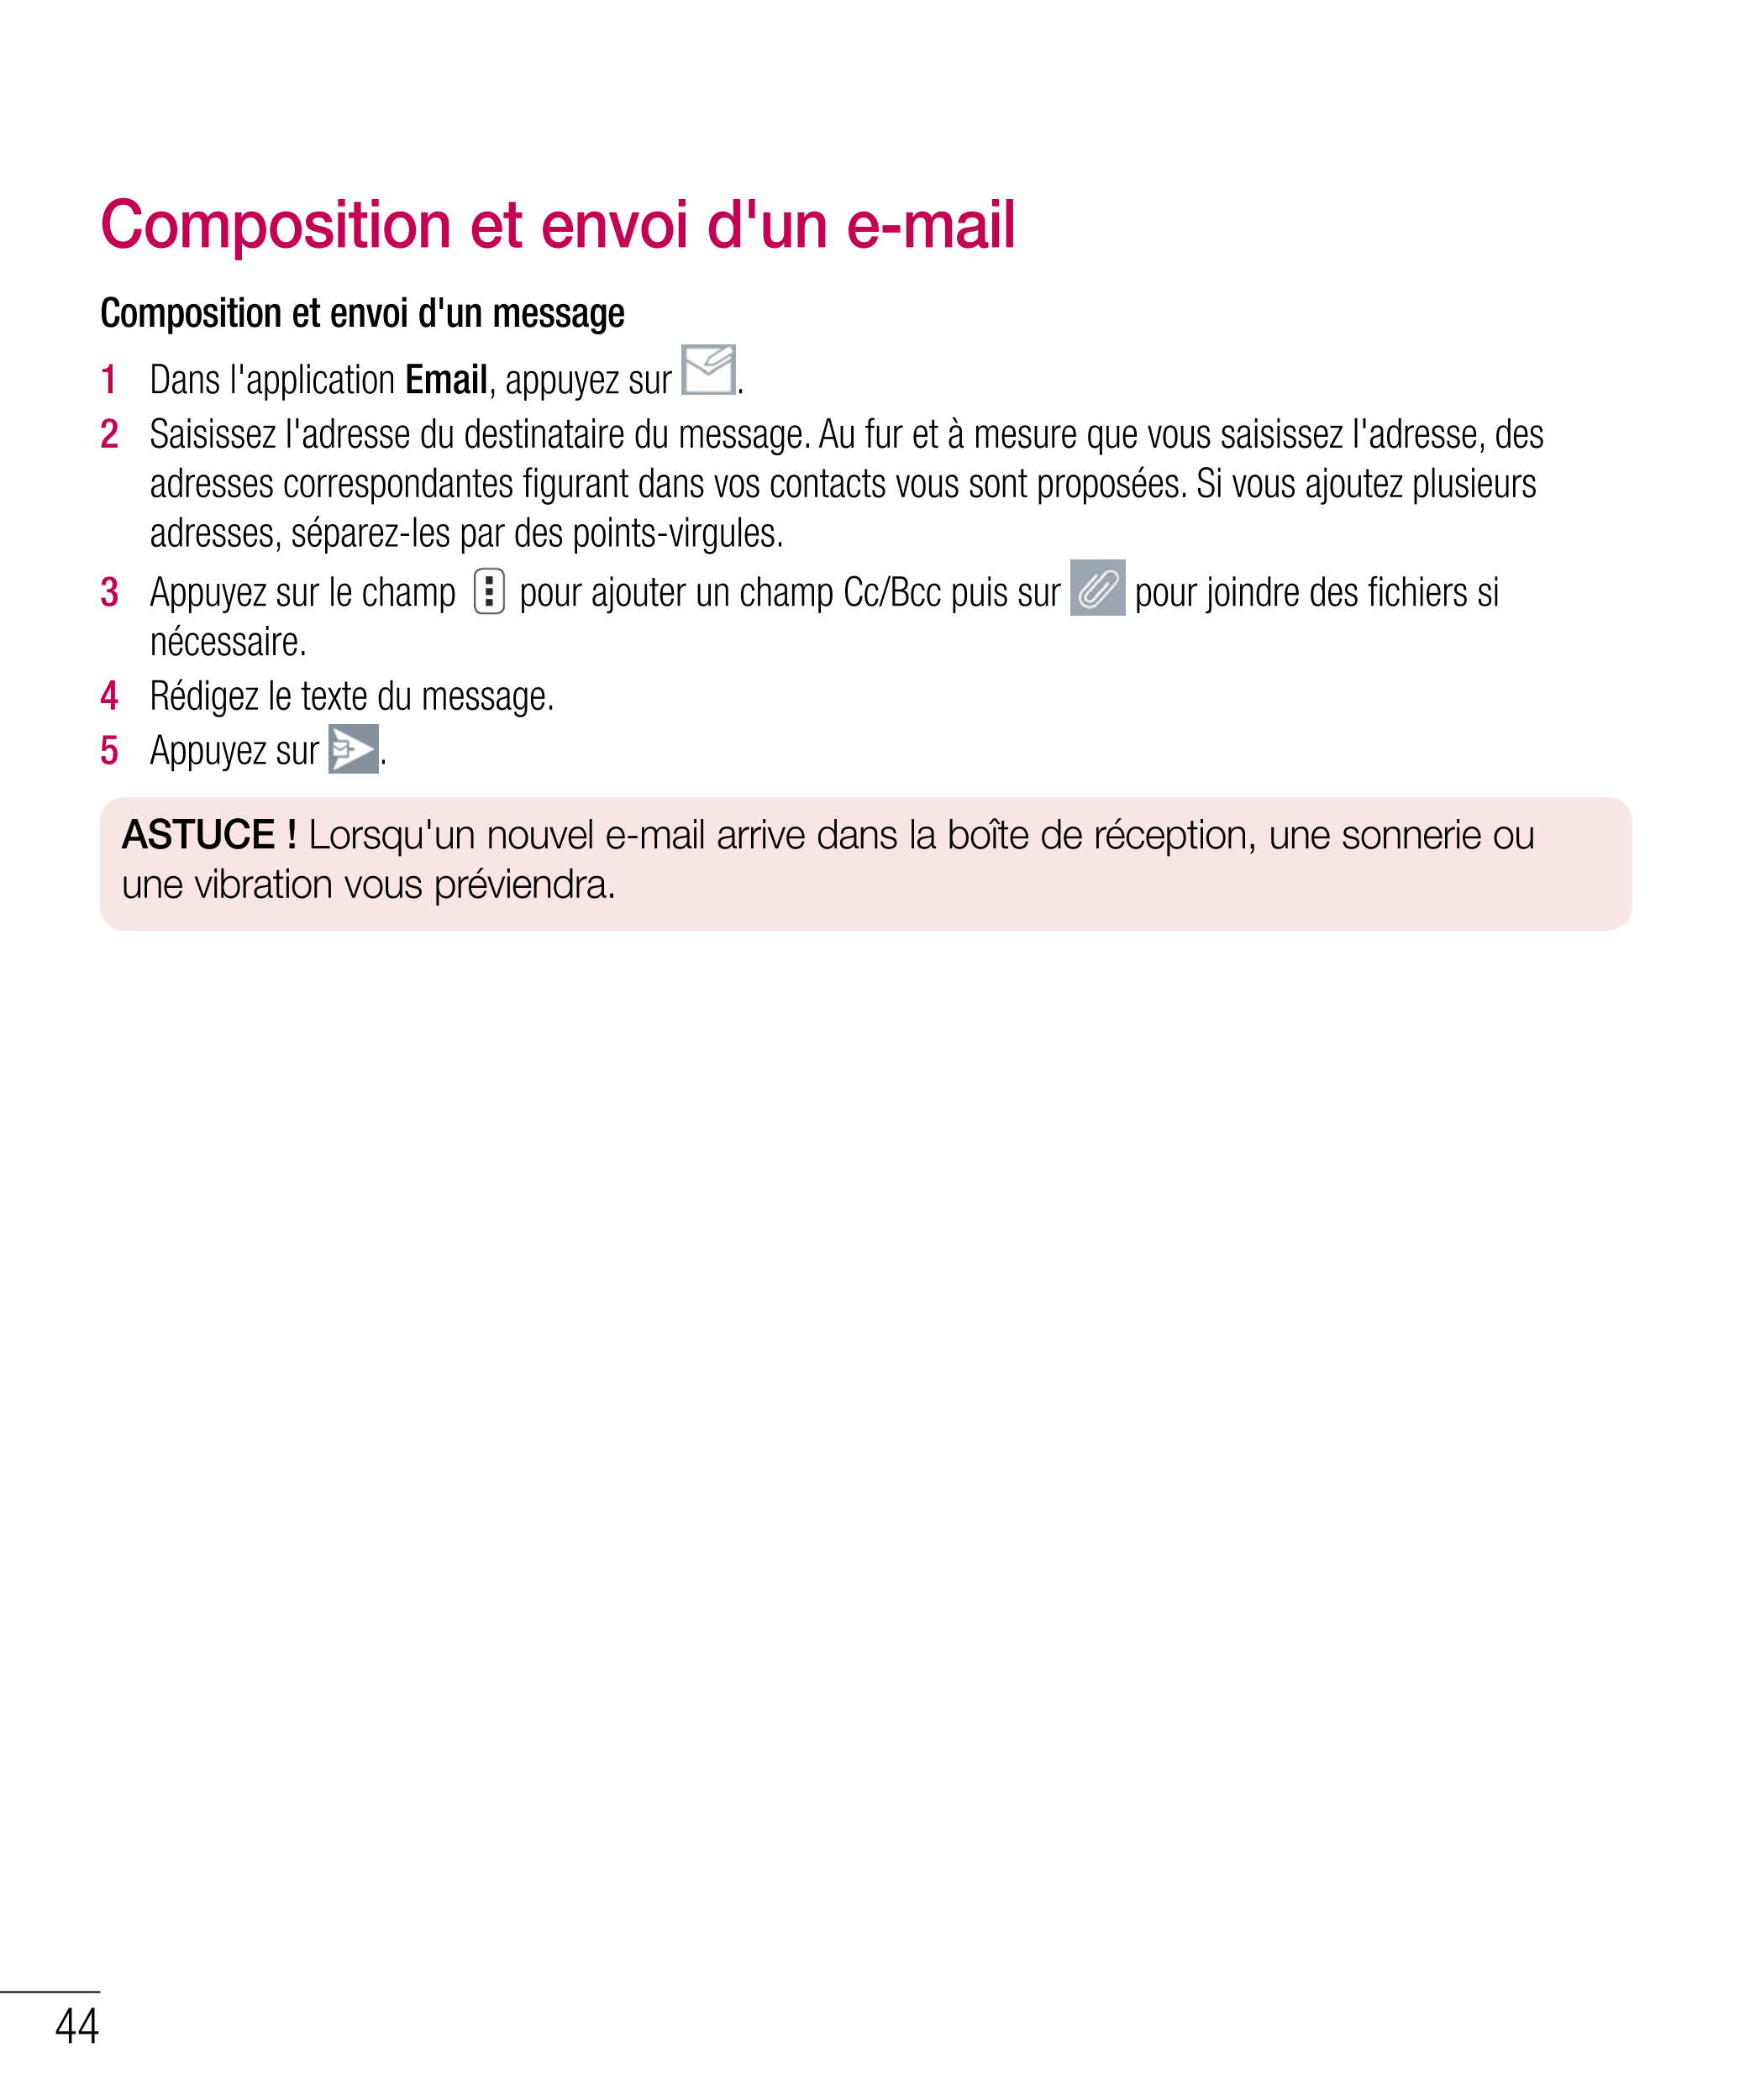 Composition et envoi d'un e-mail
Composition et envoi d'un message
1   Dans l'application  Email, appuyez sur  .
2   Saisissez l